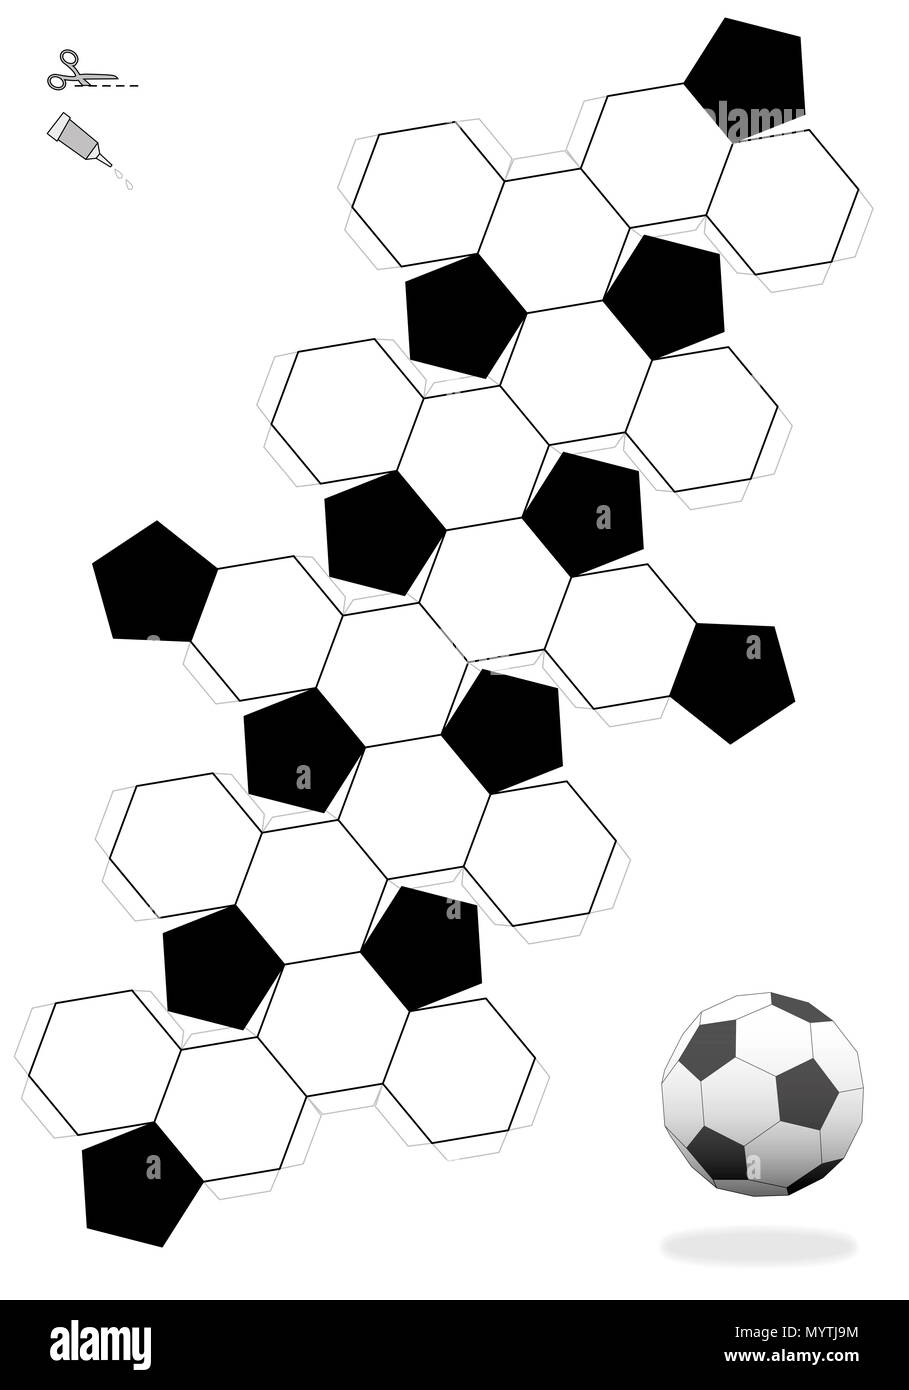 Abgeschnittene Ikosaeder. Fußball-Vorlage für die Herstellung von einem 3D-Objekt aus dem Netz mit 12 schwarze und 20 Weiße, hexagonale Gesichter. Stockfoto